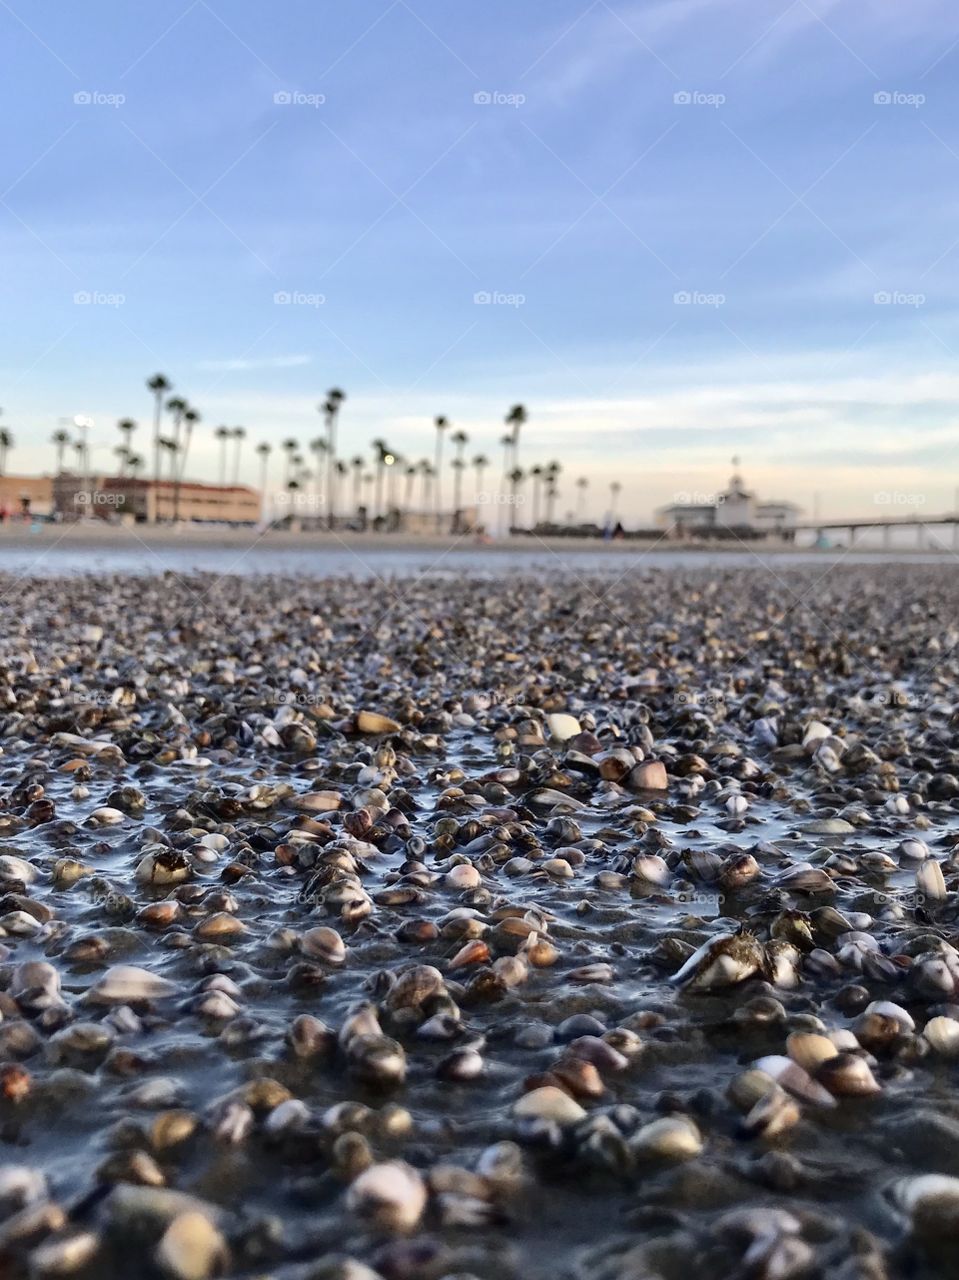 Shell filled beach. 